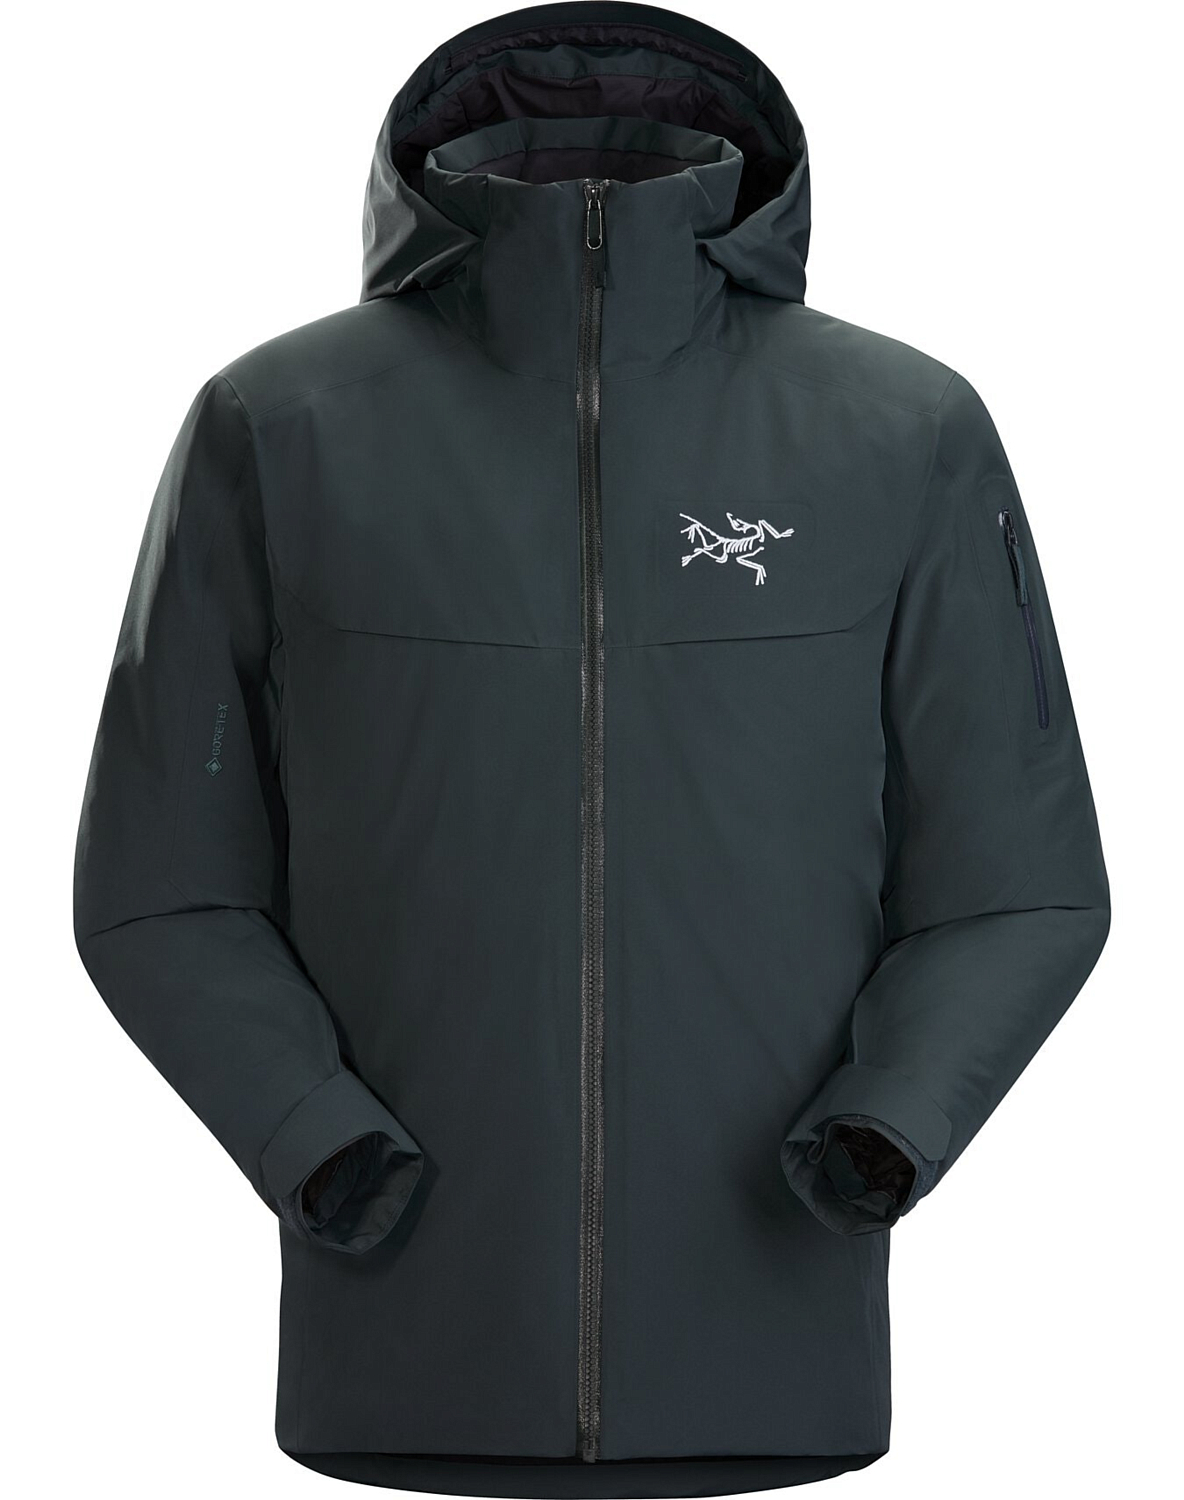 Куртка для активного отдыха Arcteryx 2020-21 Macai Jacket Men's Enigma